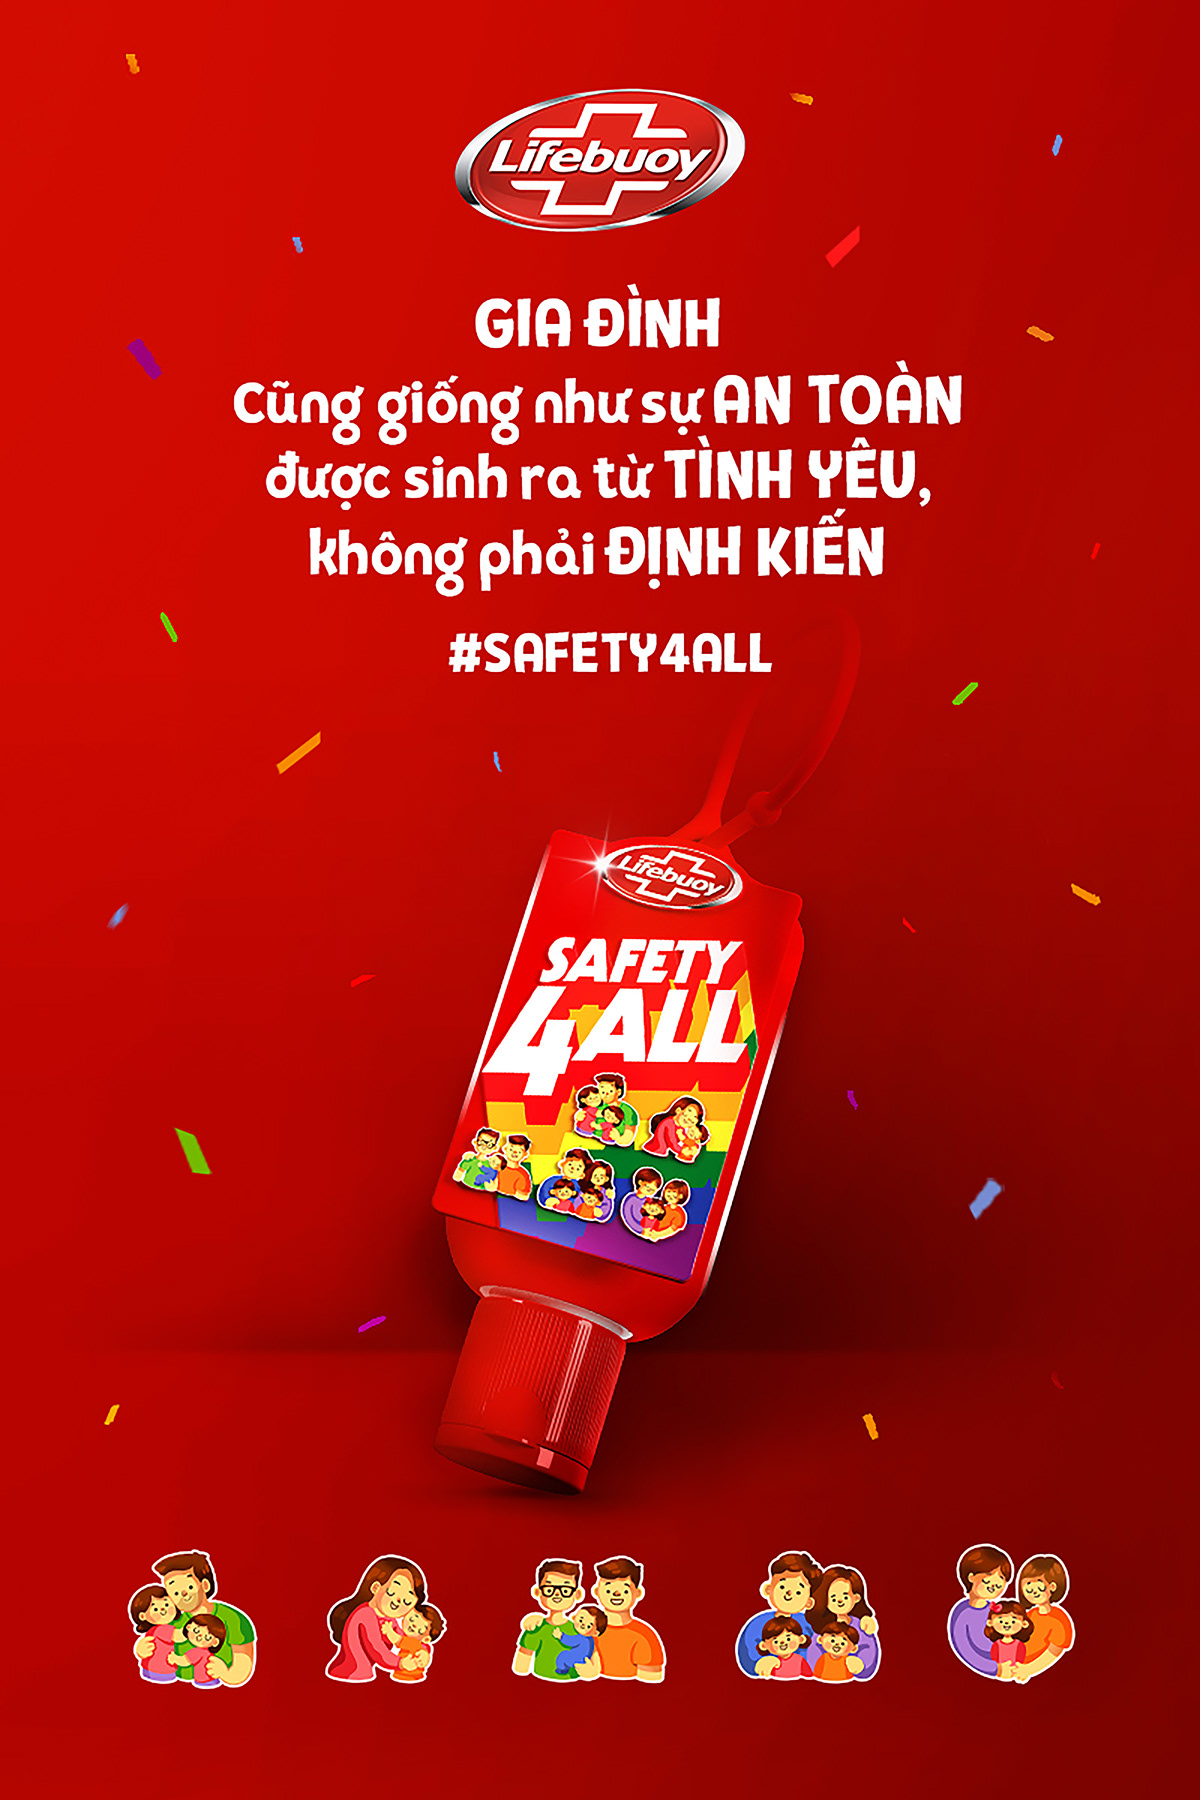 sticker Social media post brand identity Packaging Lifebuoy Vietnam